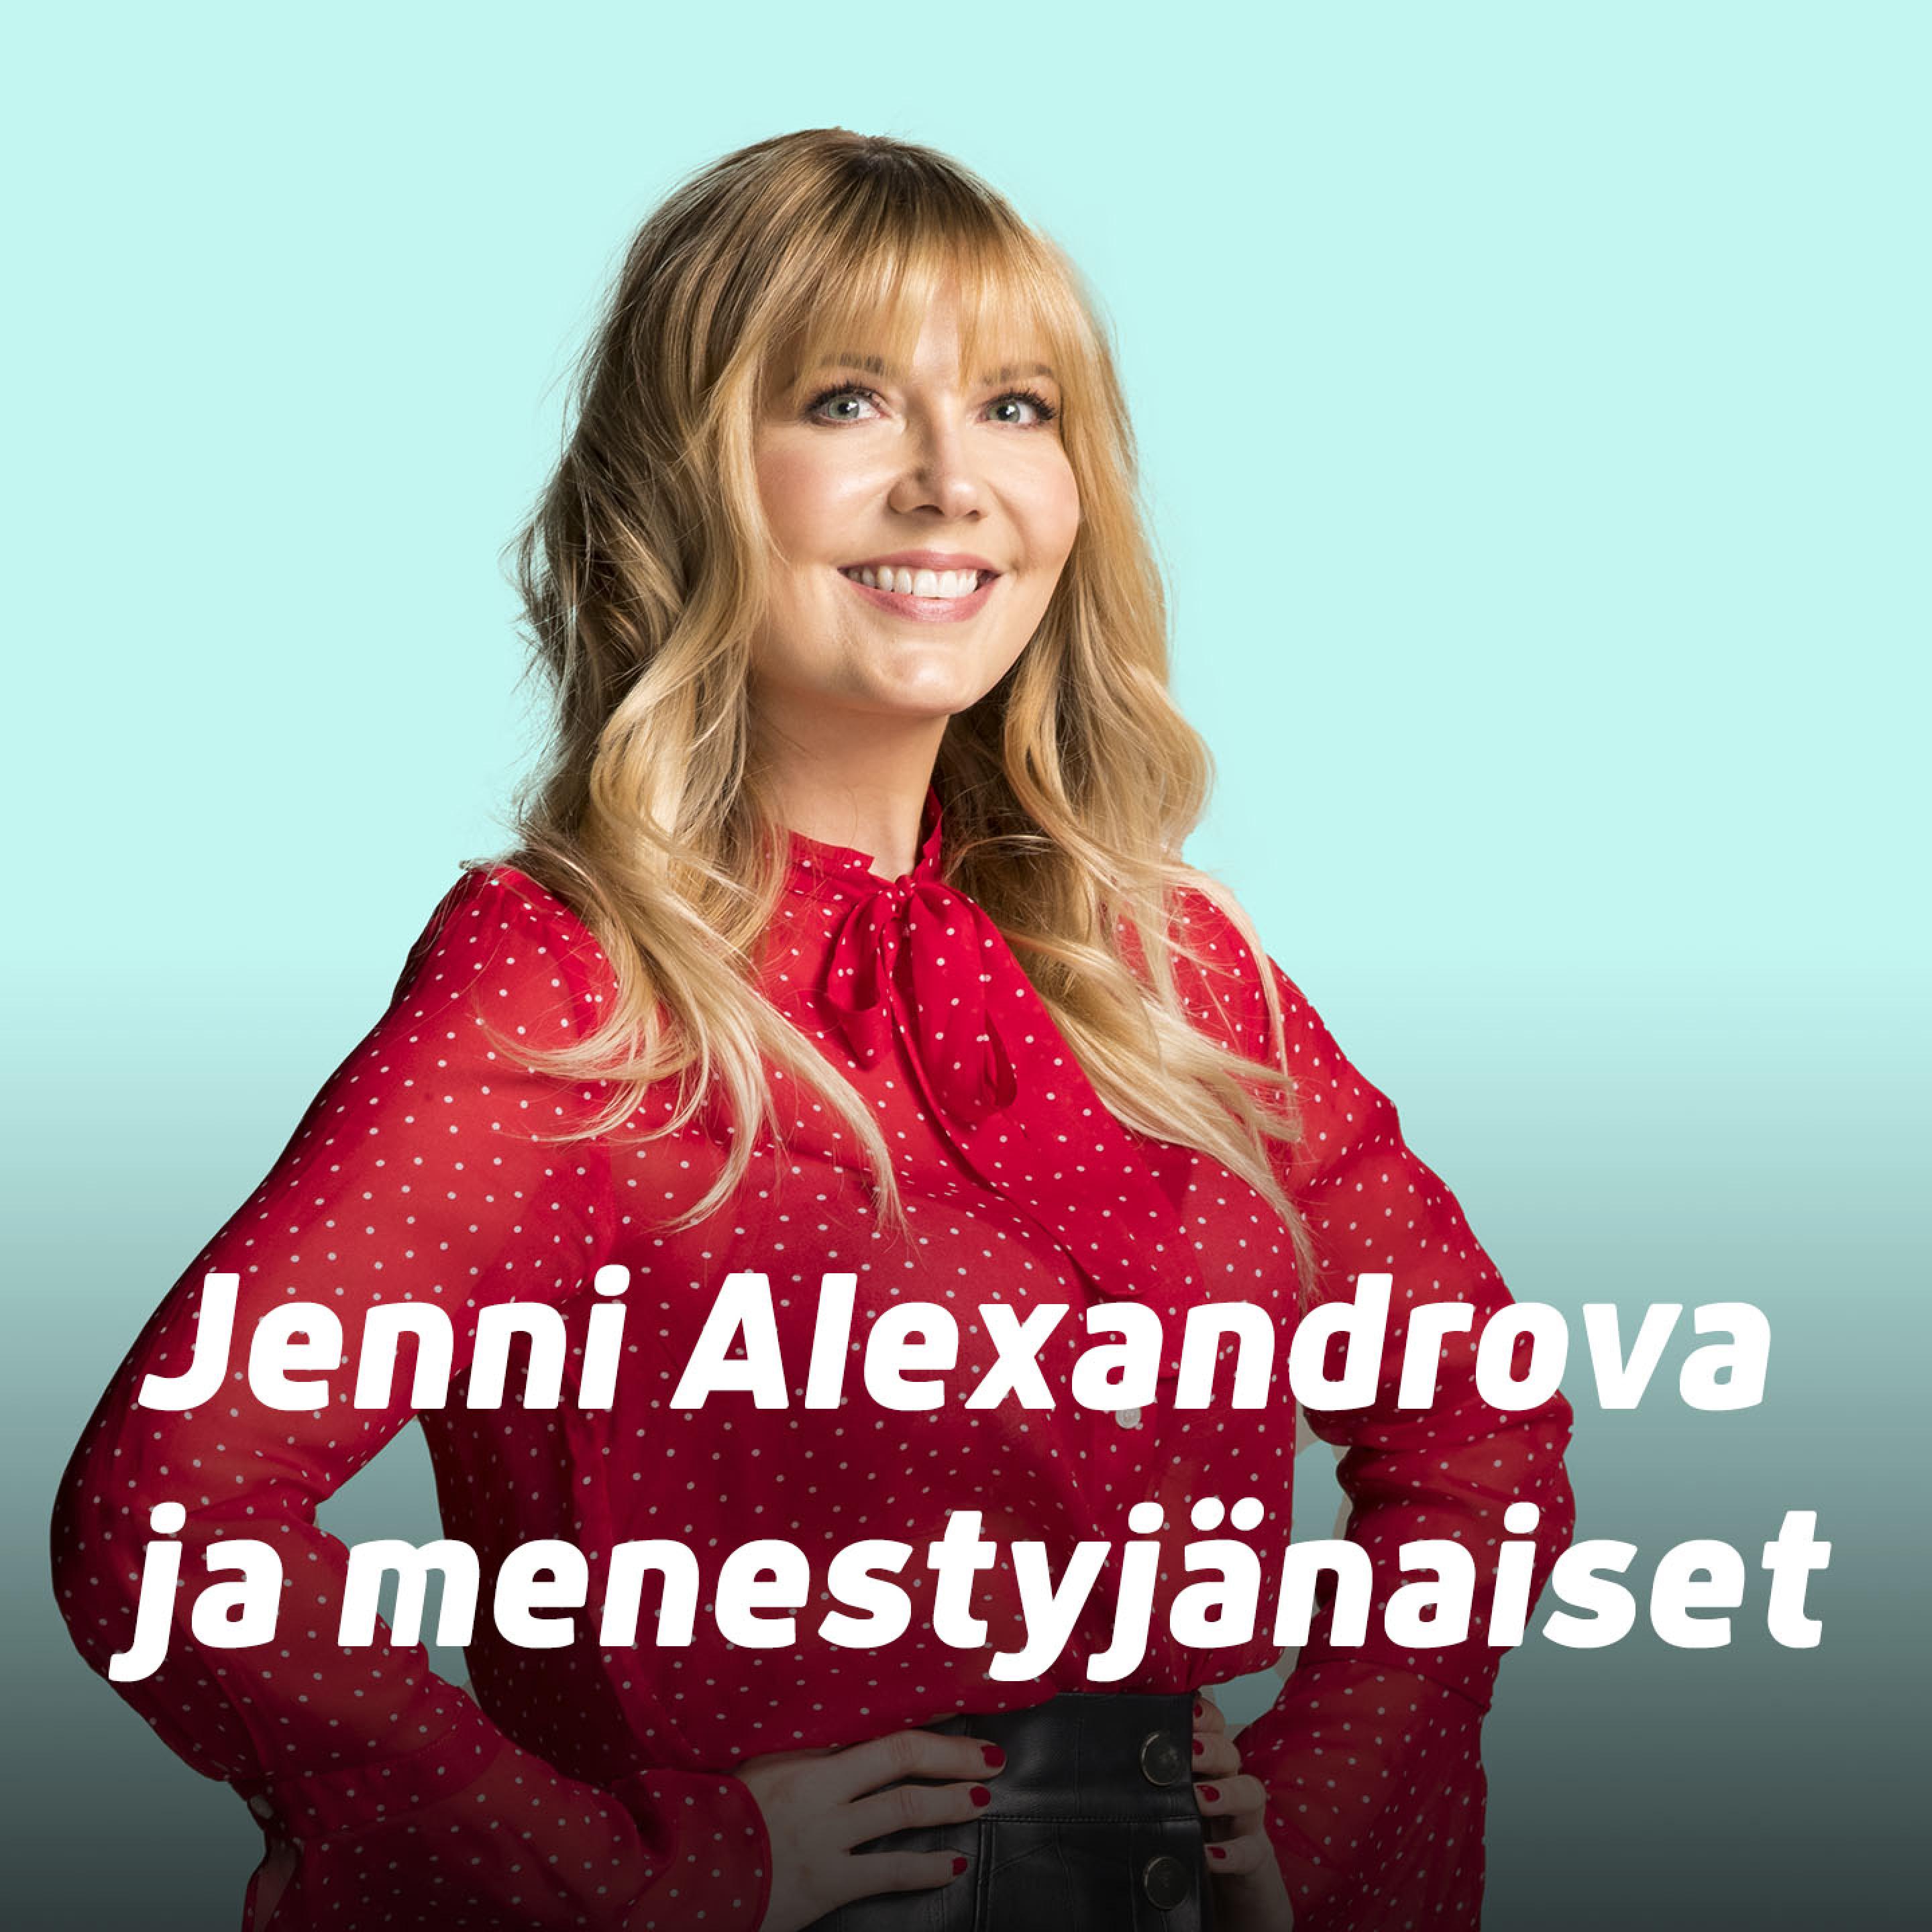 Janna musiikkimaailman sukupuolirooleista Menestyjänaisissa: ”Se on tosi perseestä...”